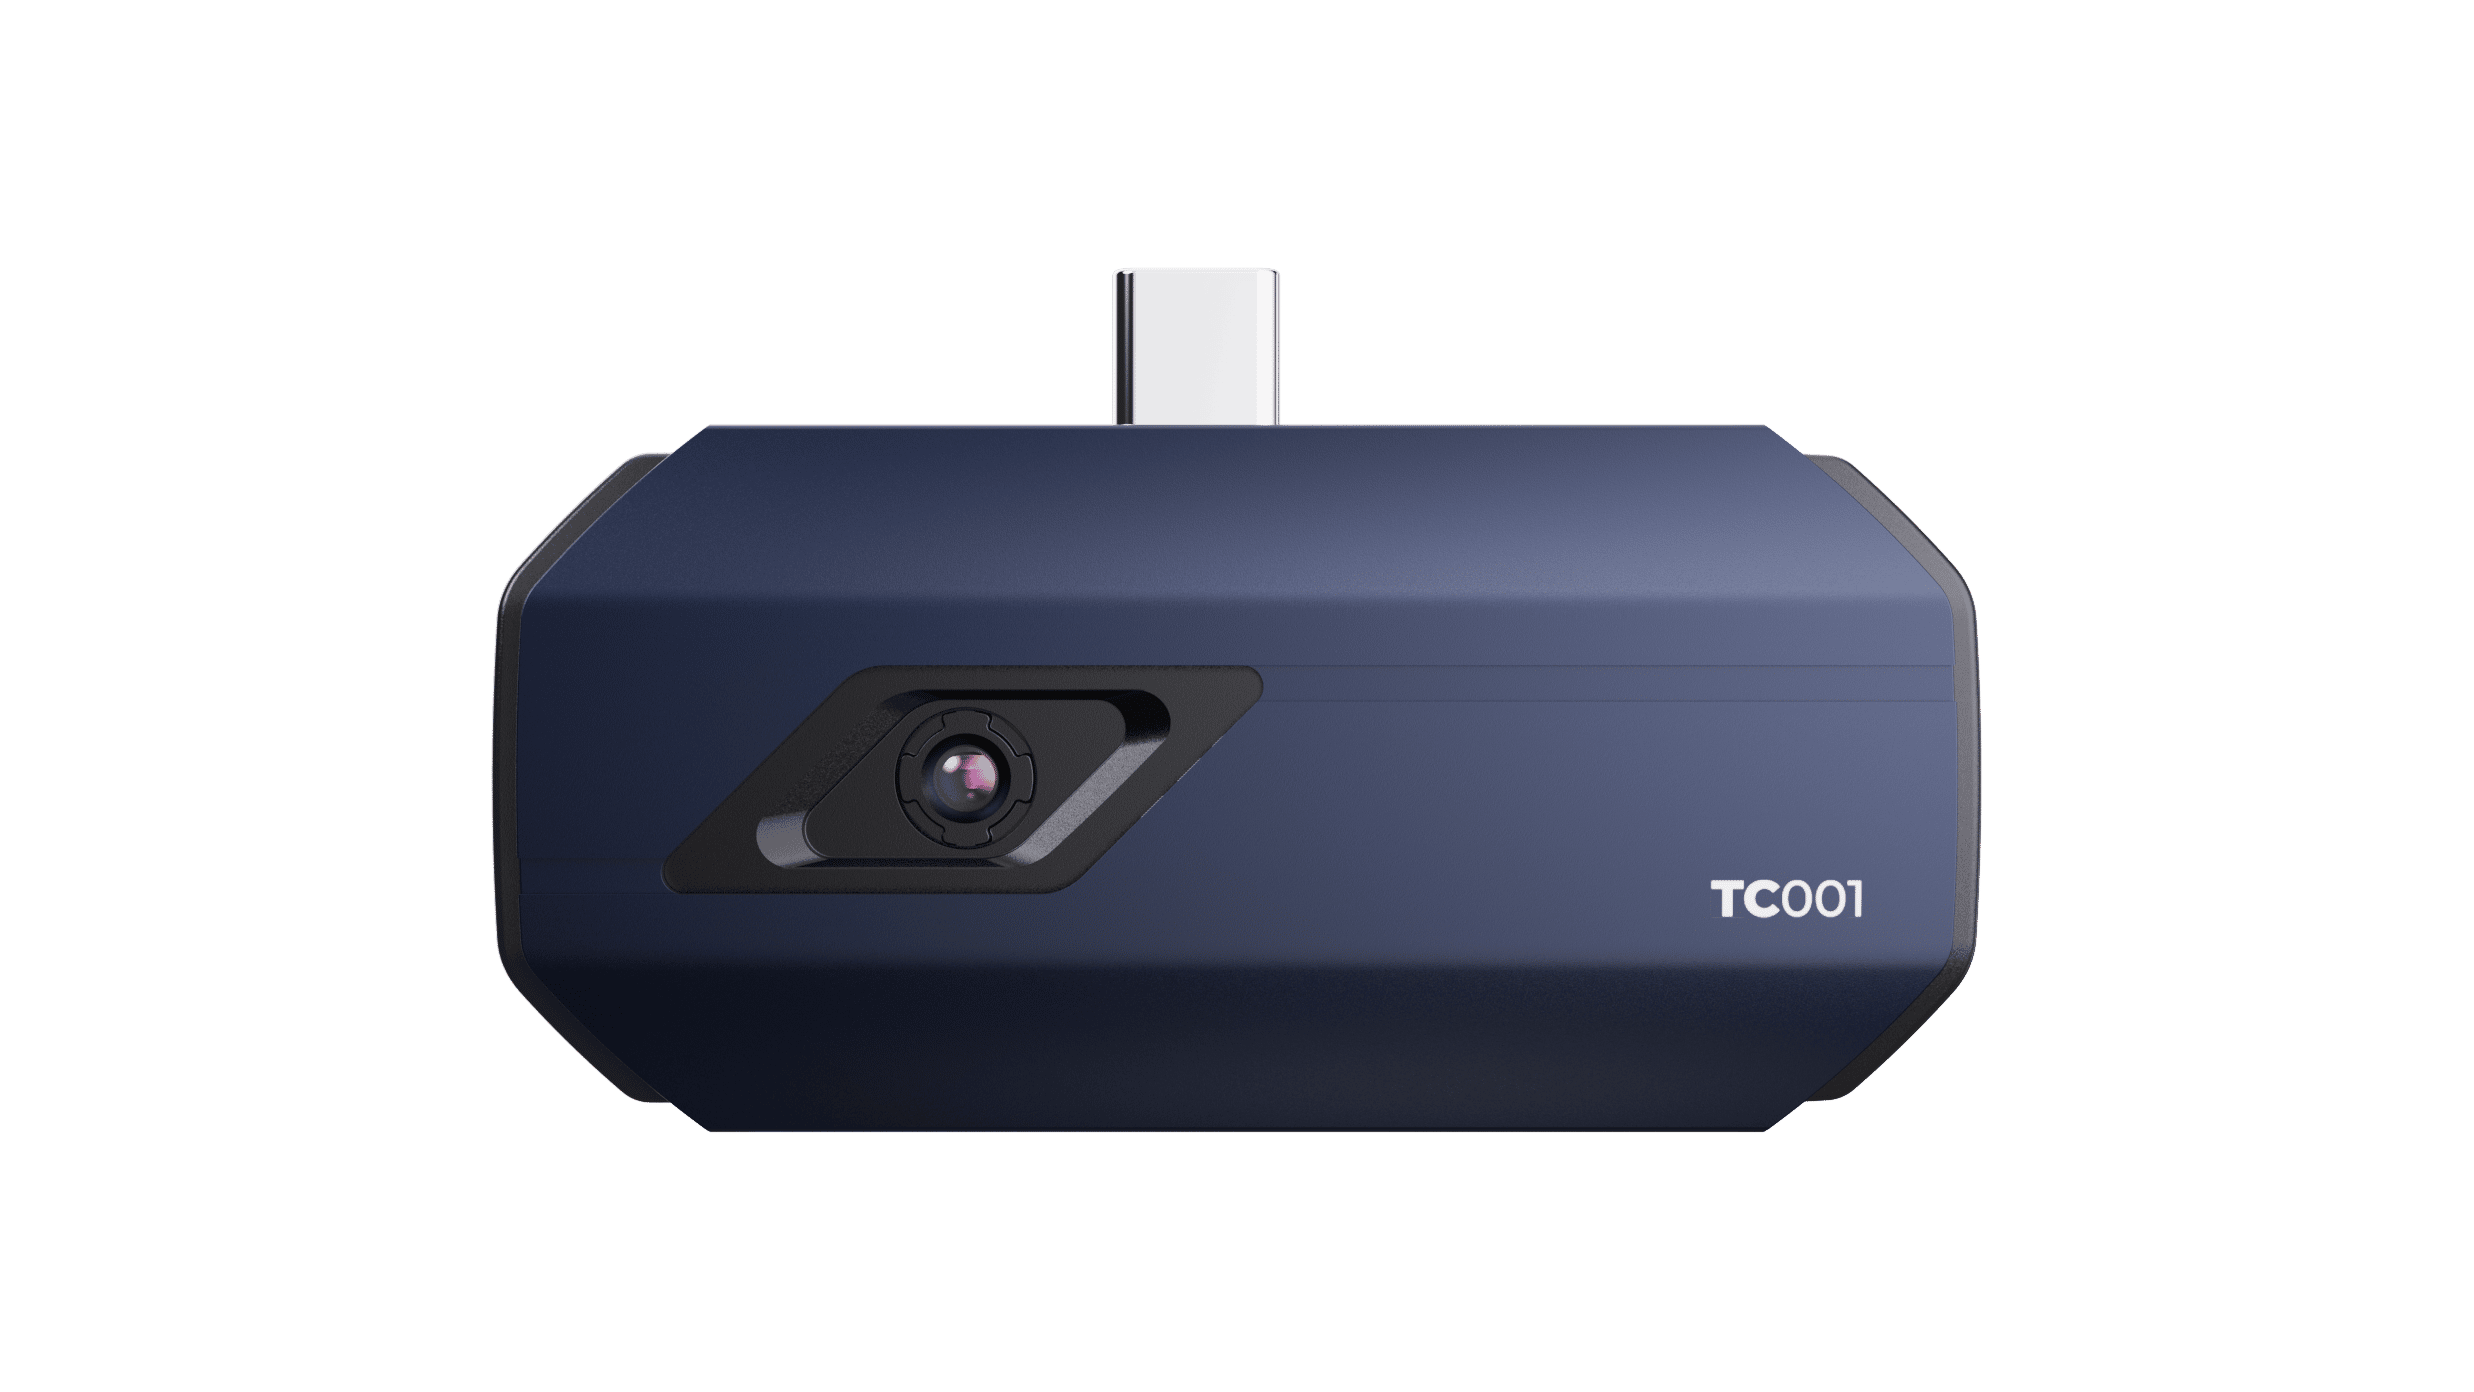 Caméra thermique infrarouge Topdon TC001 (-20 à 550 degrés) à 230,30 euros  (Terminé)